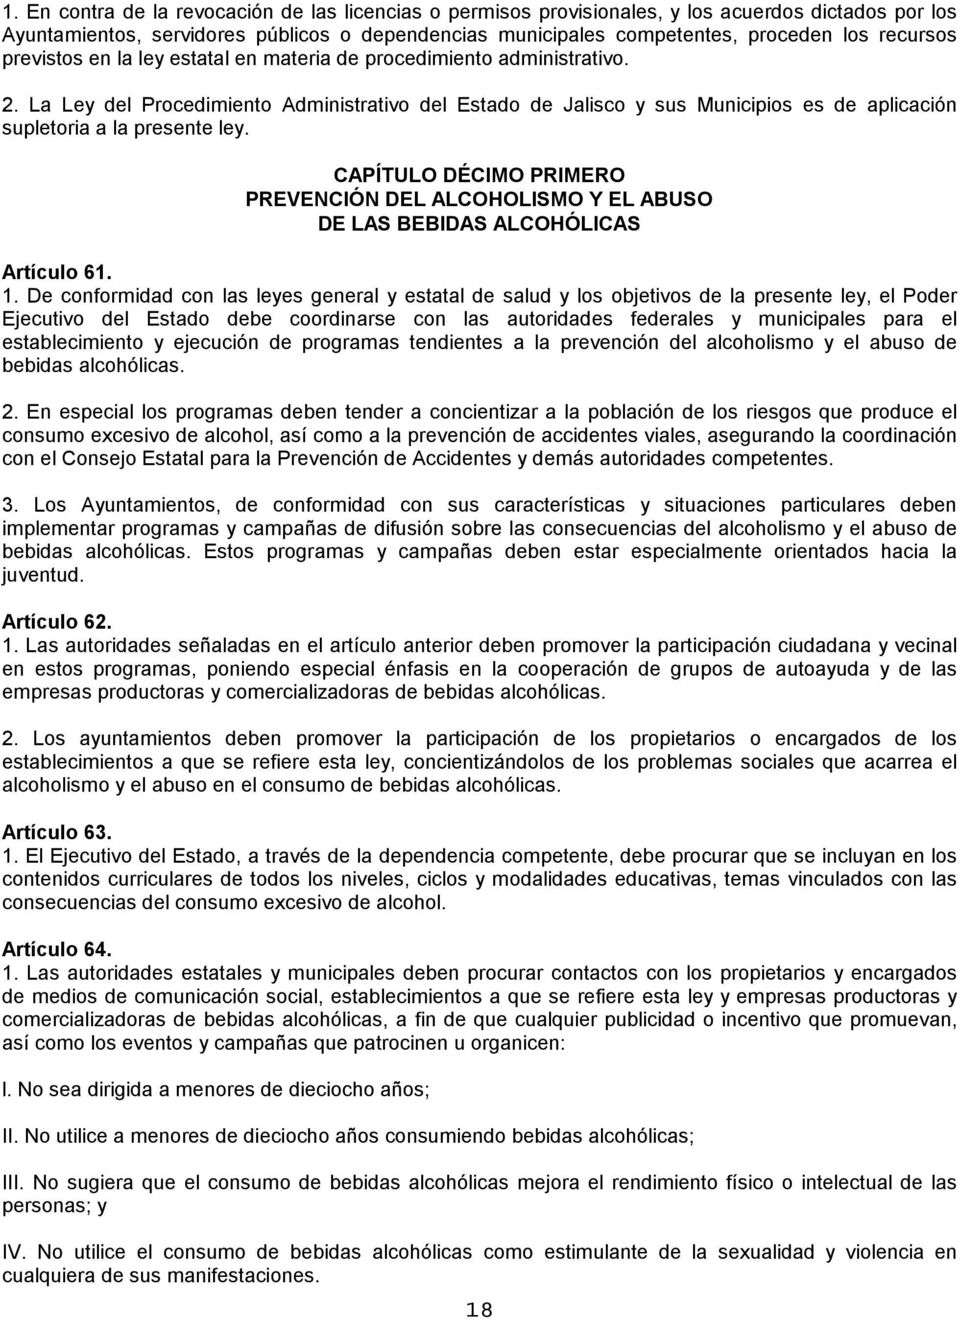 La Ley del Procedimiento Administrativo del Estado de Jalisco y sus Municipios es de aplicación supletoria a la presente ley.